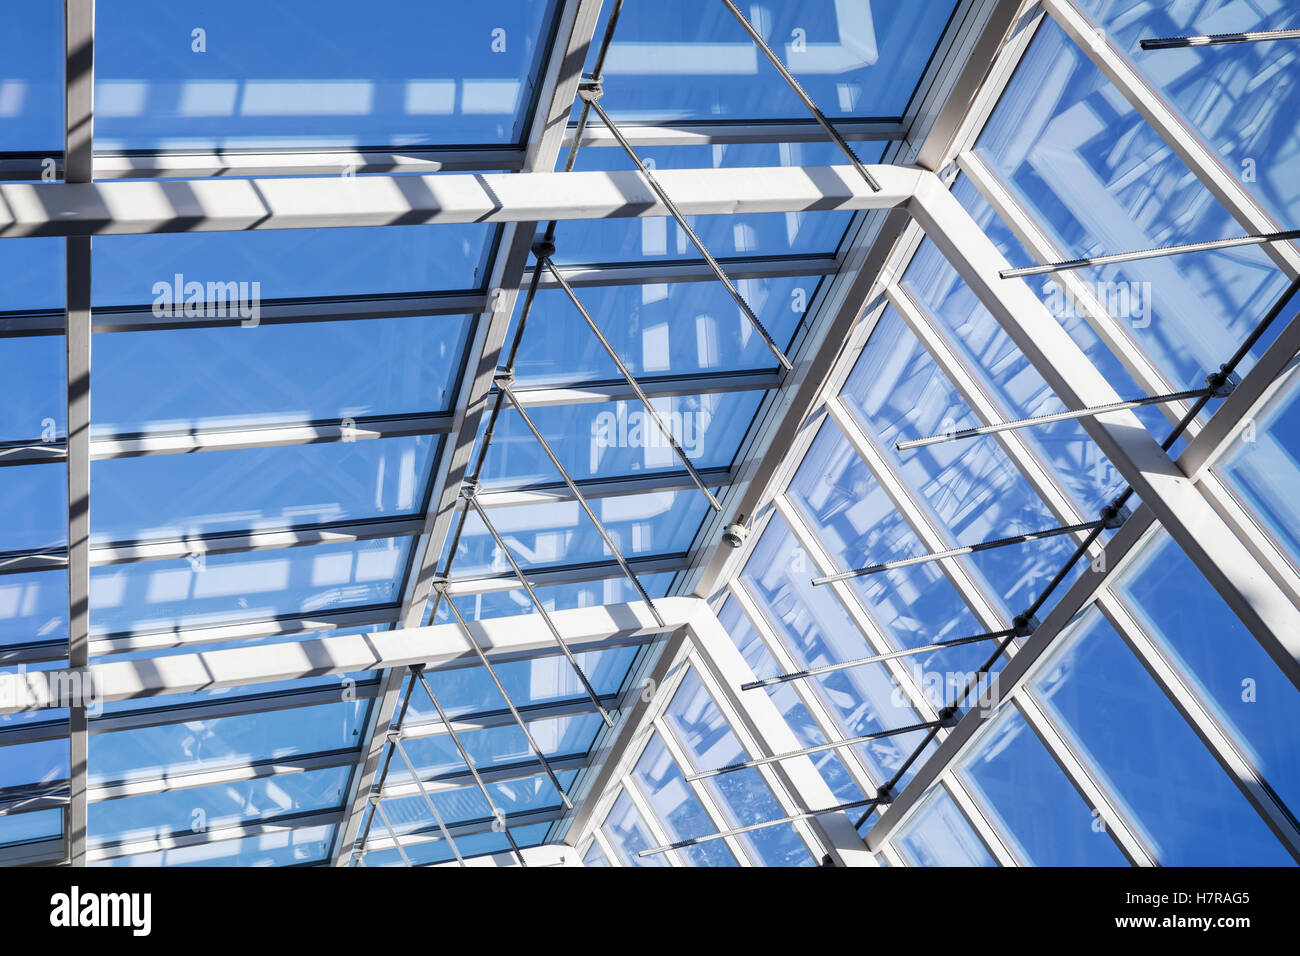 Abstrakte Hightech-Architektur Hintergrund, innere Struktur von Glas Dach Bogen mit abschließbaren Windows Abschnitte Stockfoto